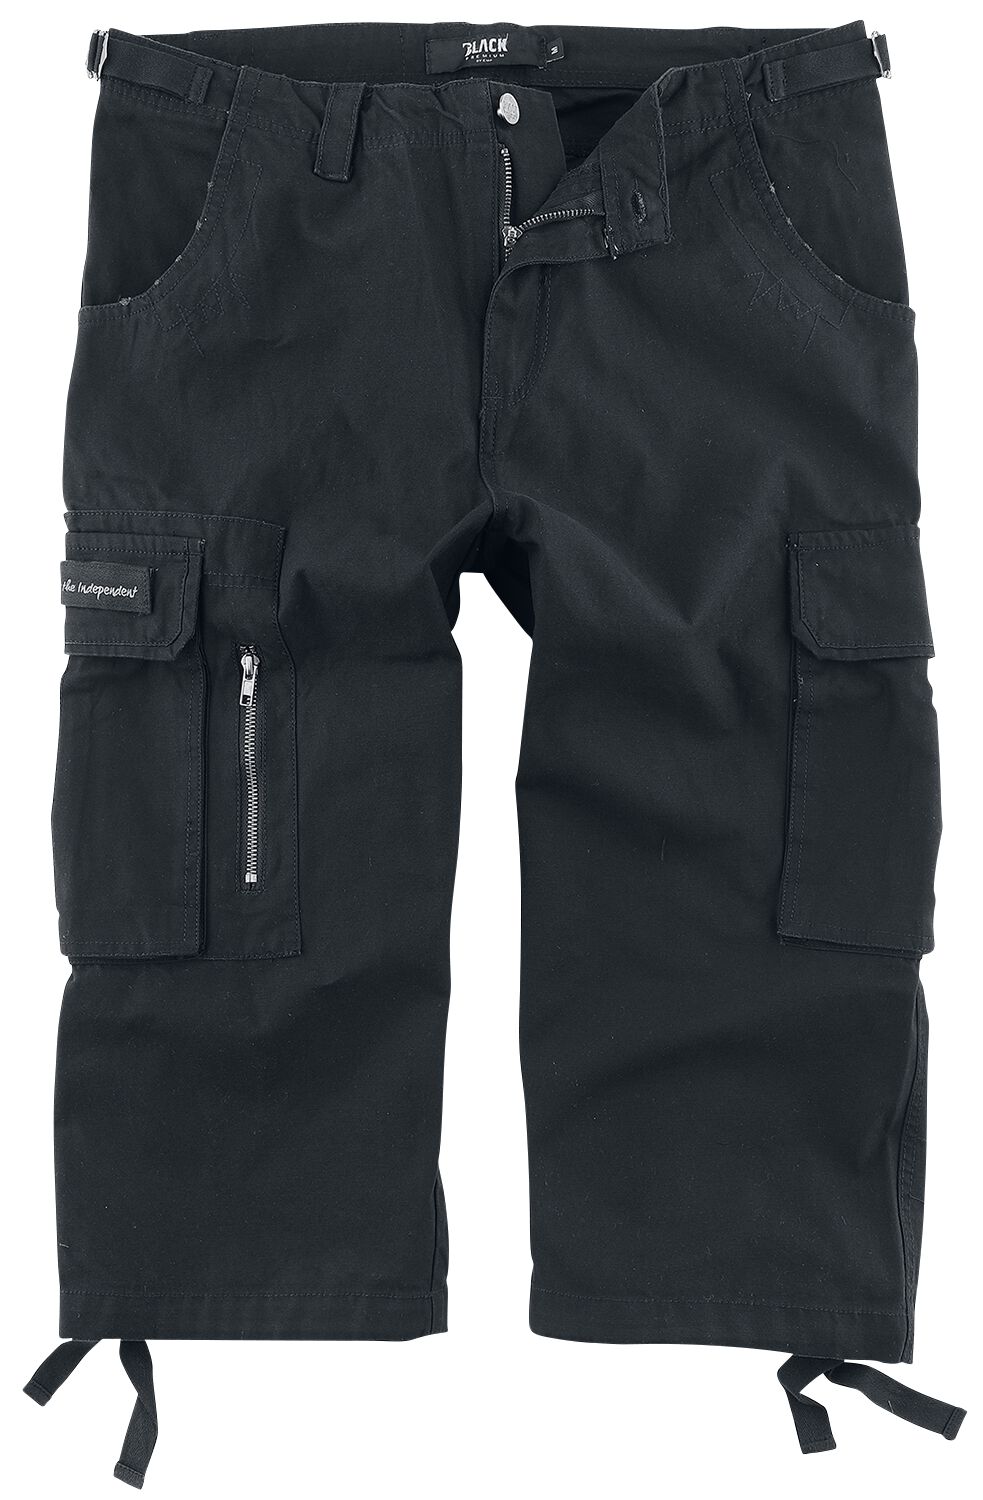 Black Premium by EMP 3/4 Army Vintage Shorts Short schwarz in XXL